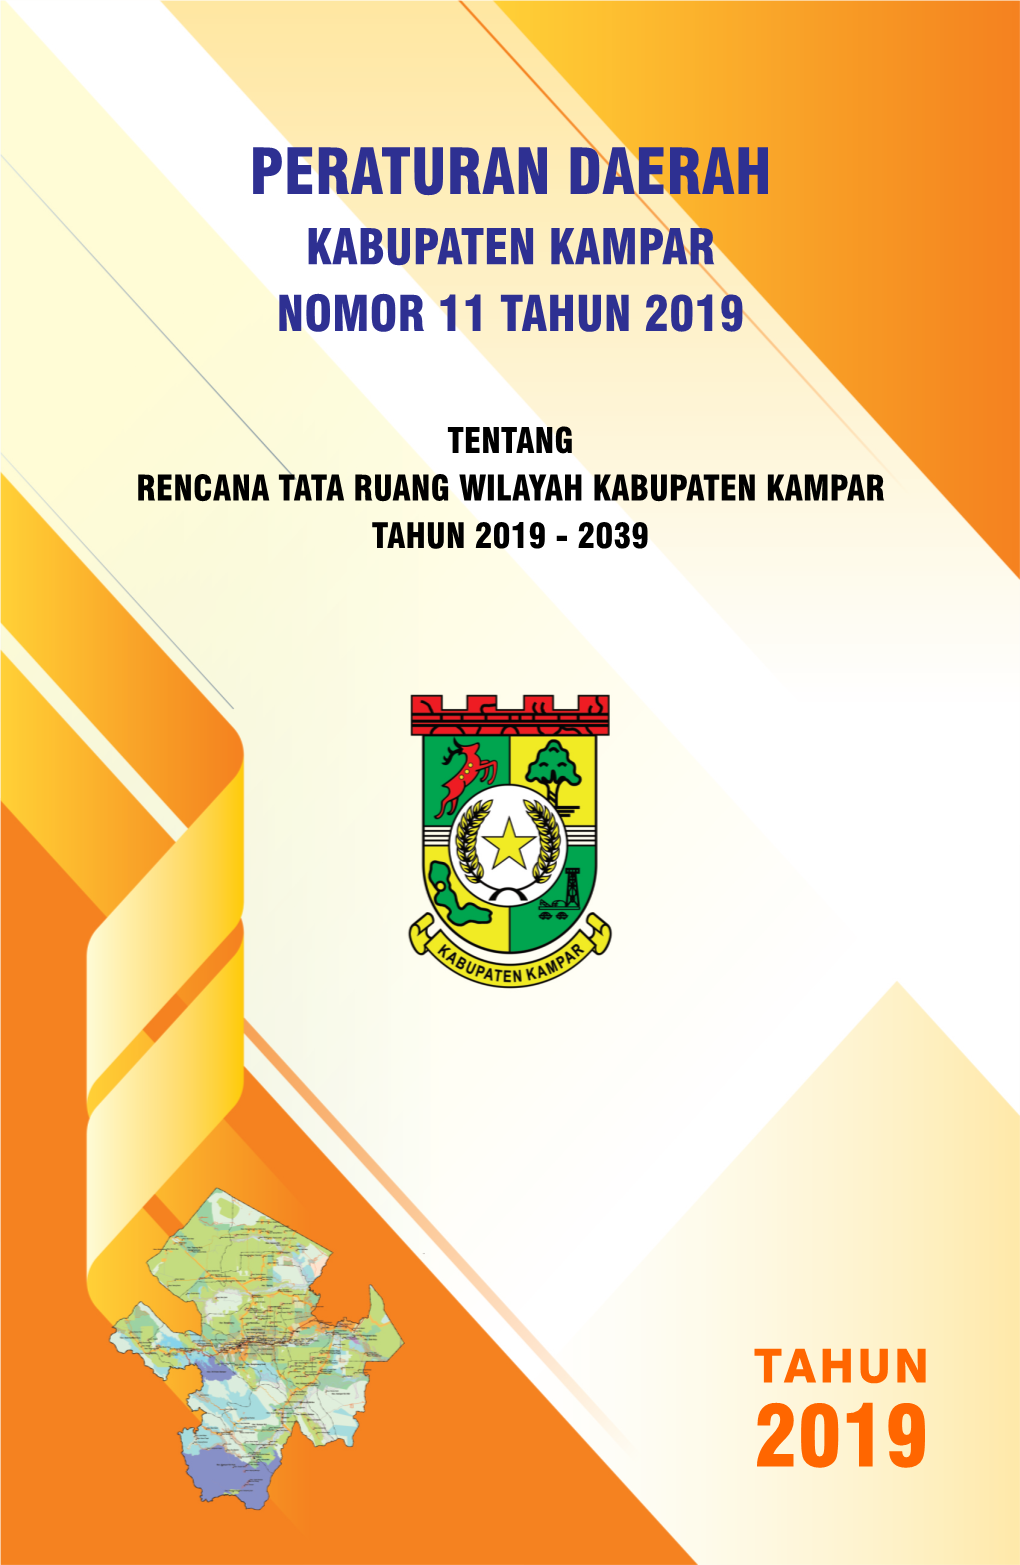 Peraturan Daerah Kabupaten Kampar Nomor 11 Tahun 2019